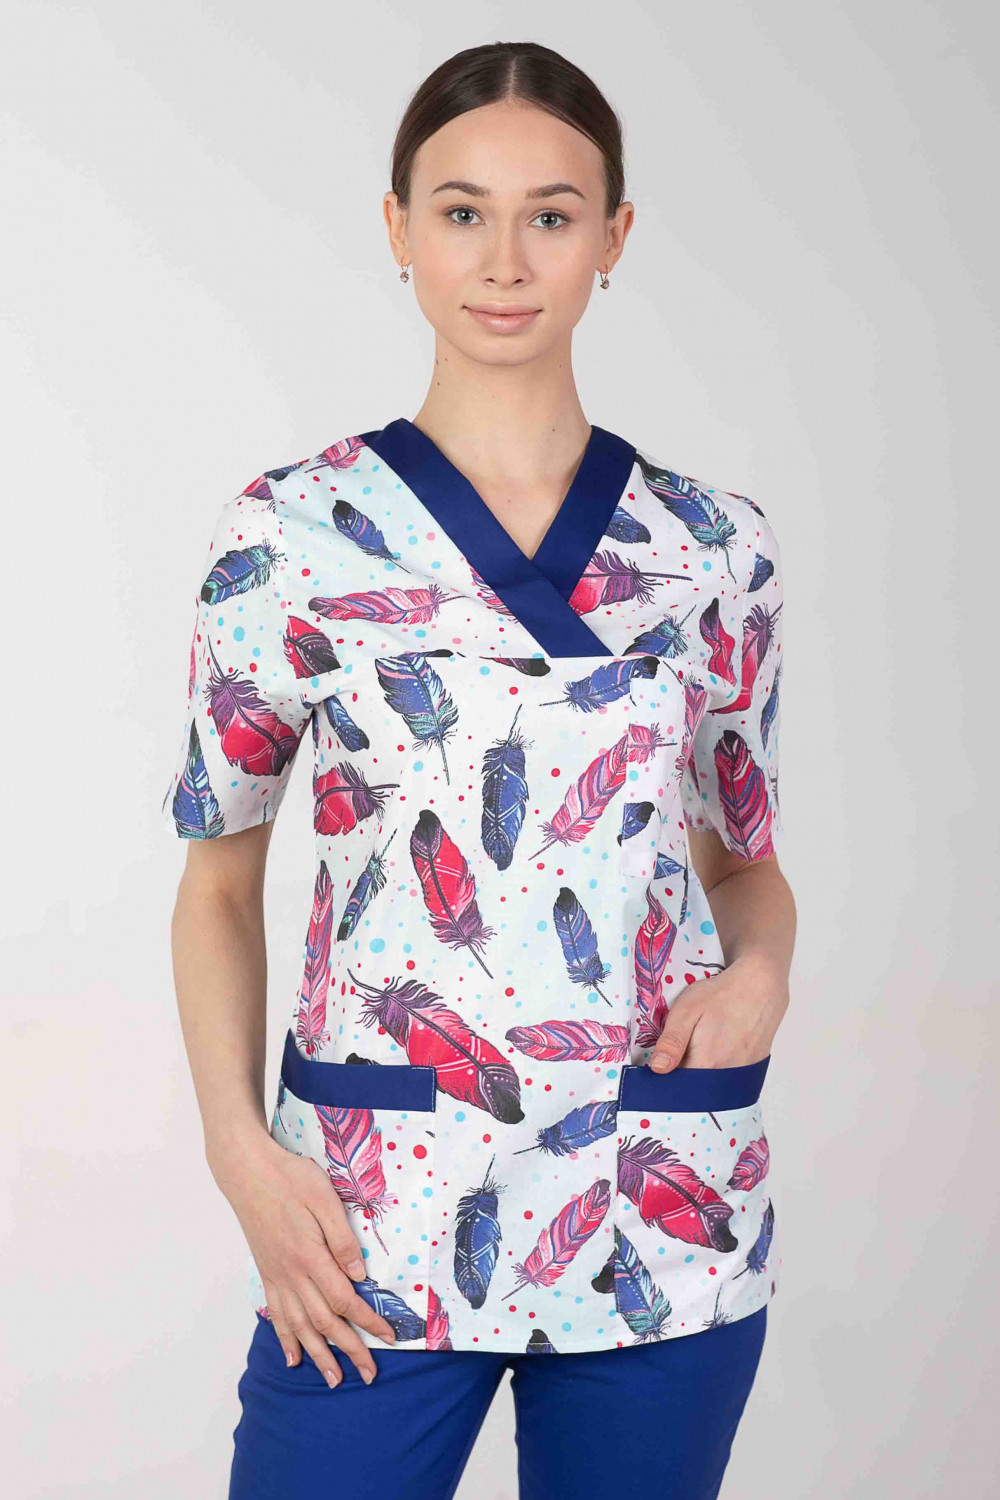 Bluza medyczna we wzorki kolorowa damska MARTEX  M-074G PIÓRKA